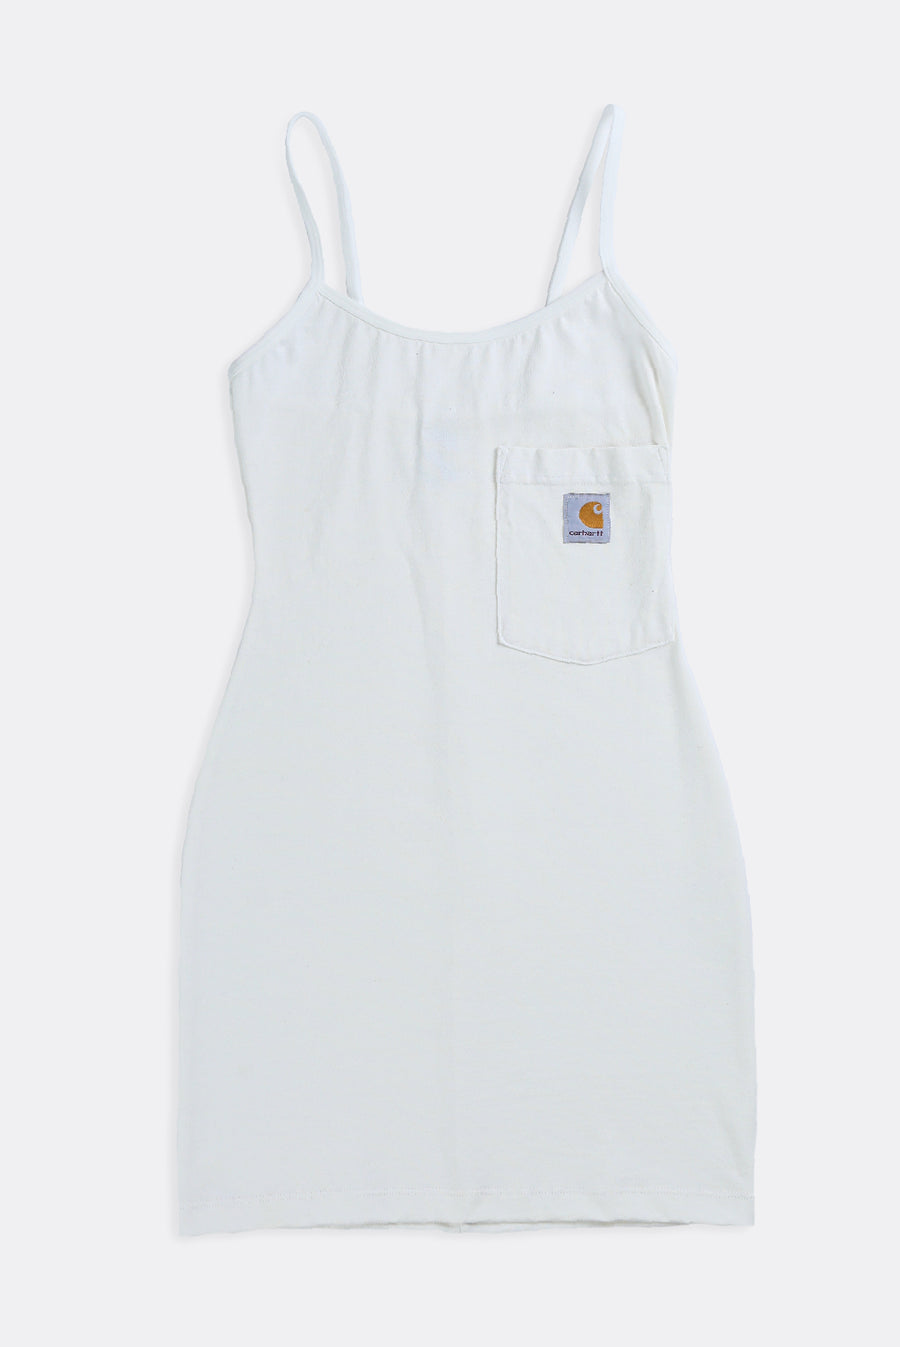 Rework Carhartt Strappy Dress - XS, S, M, L, XL